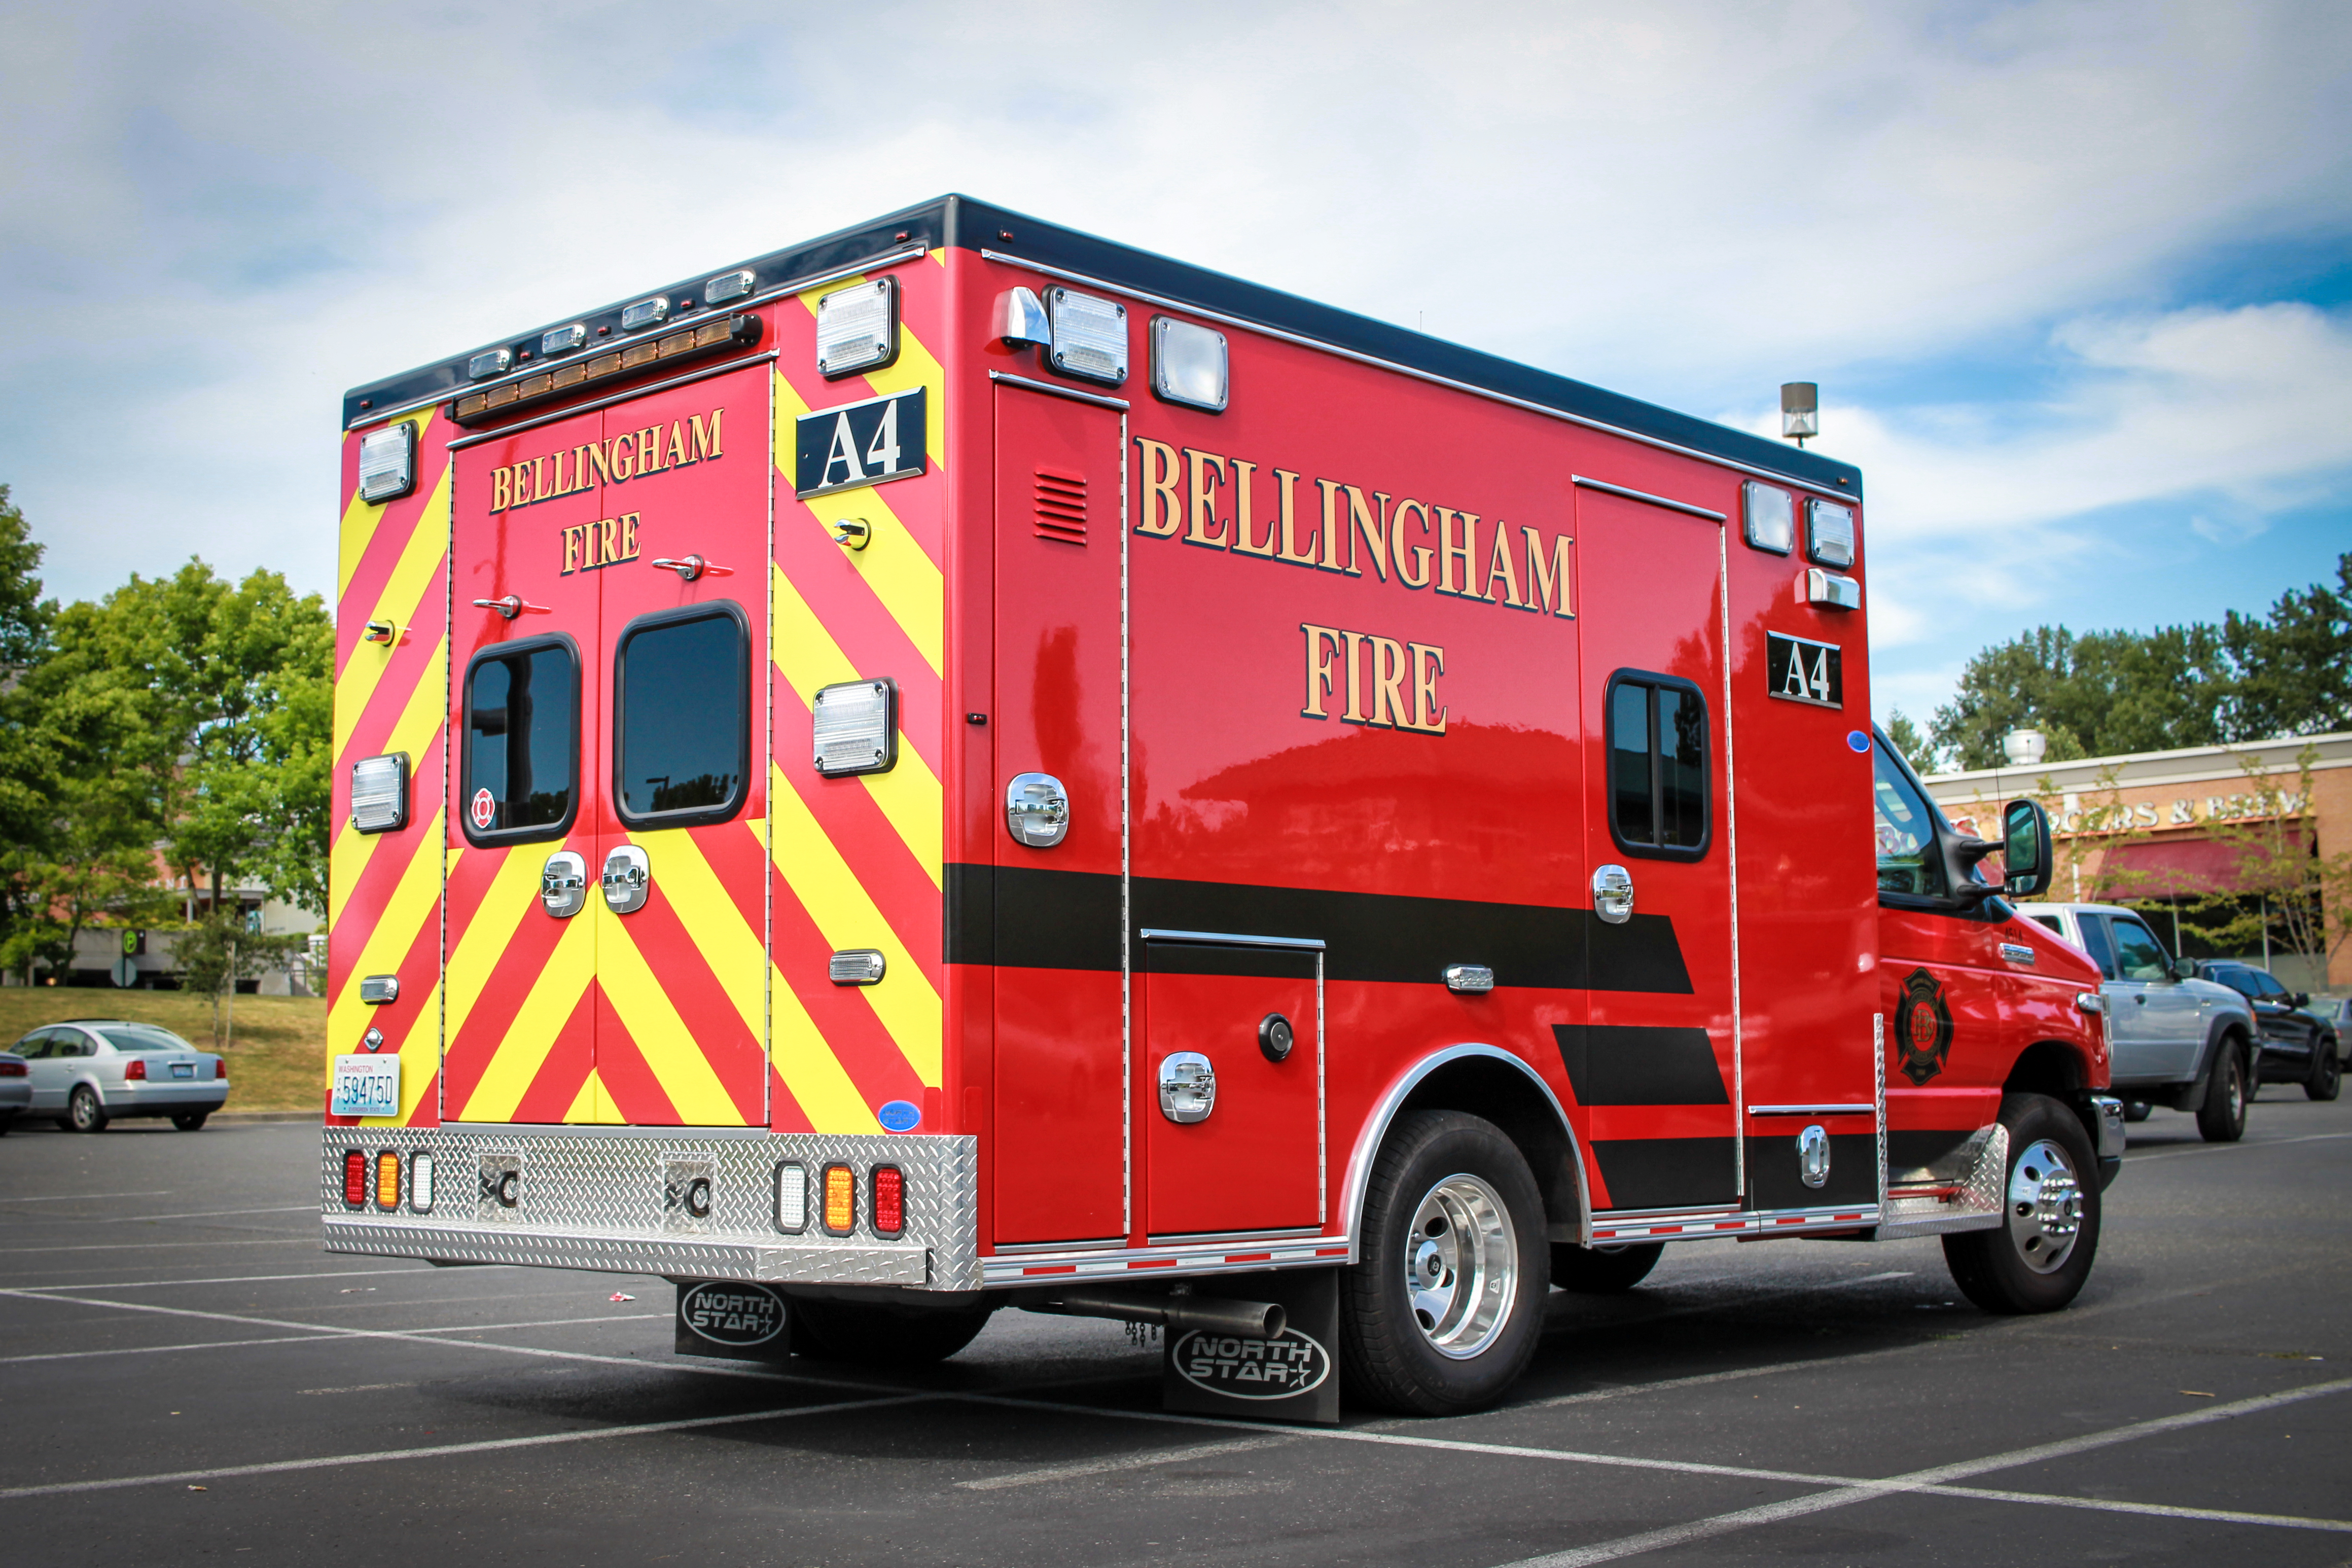 Bellingham fire ambulance 4 photo